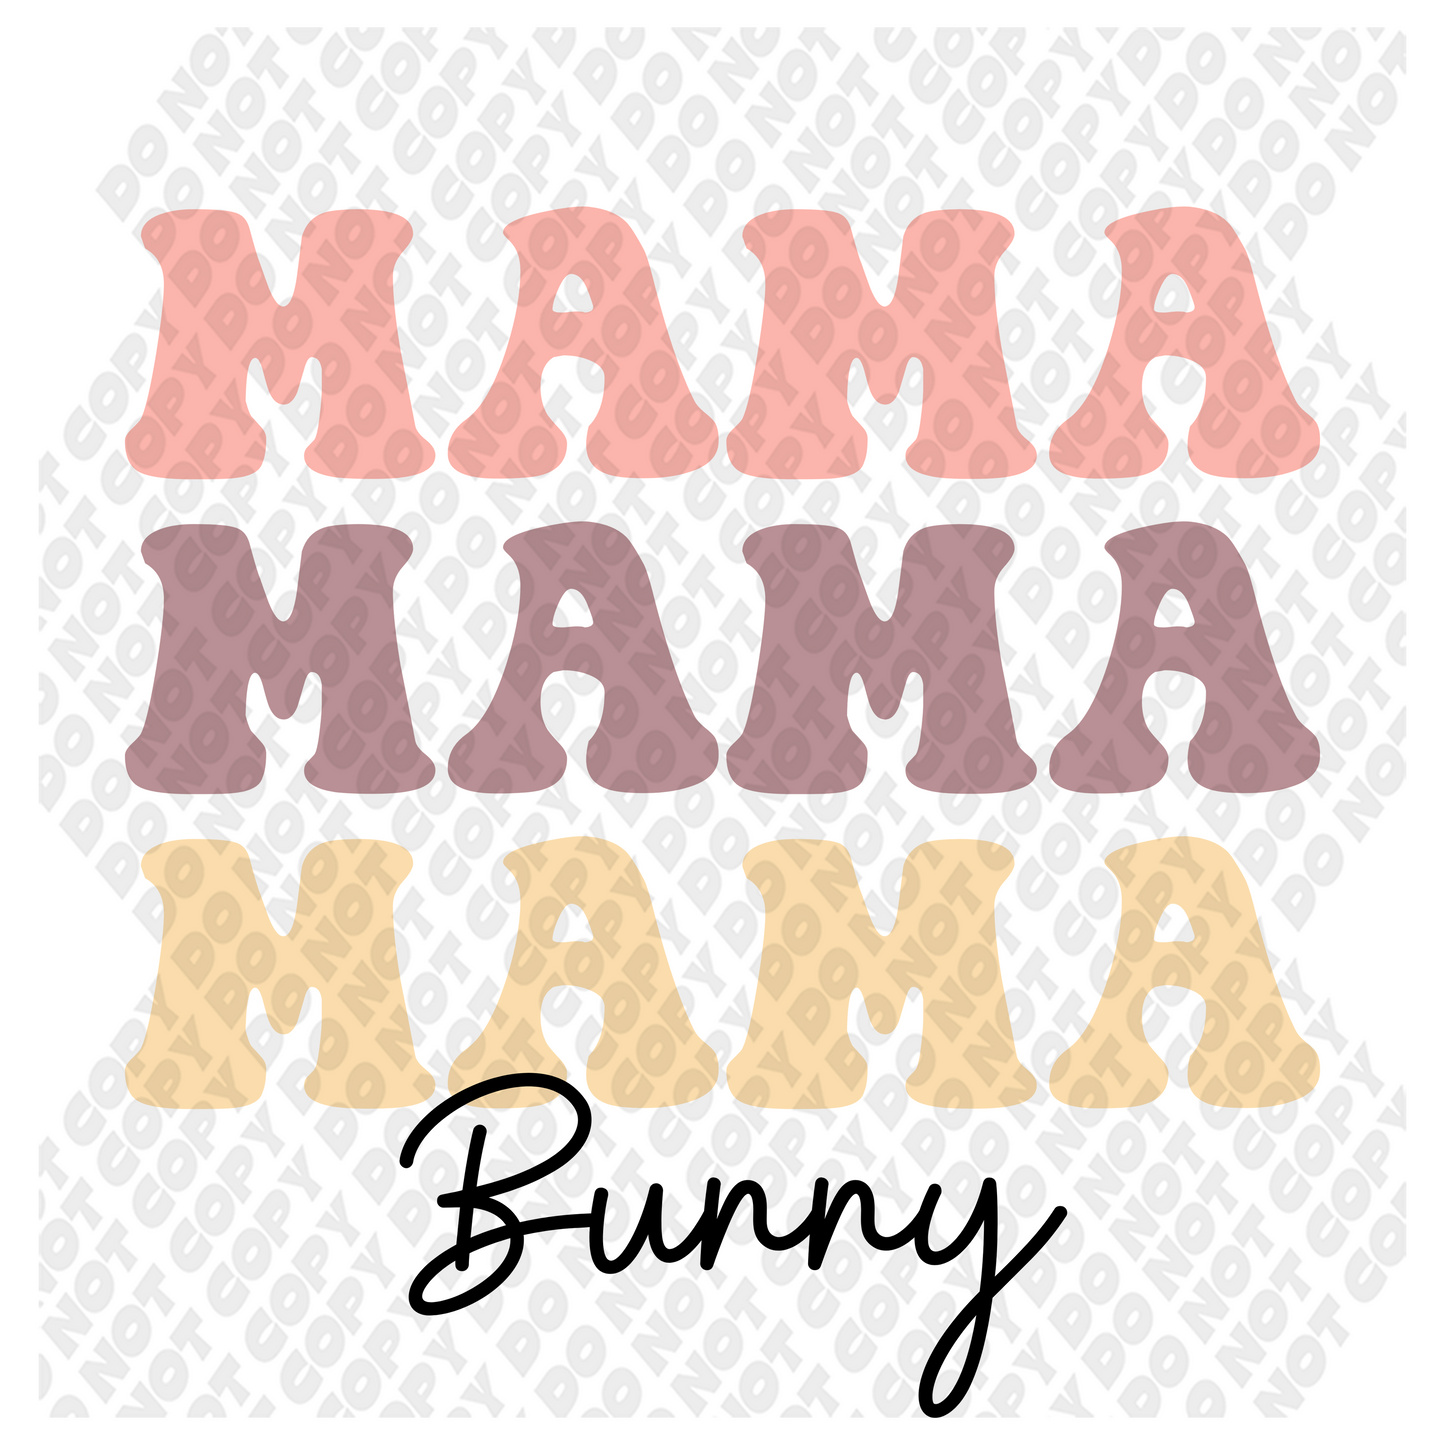 Mama Bunny